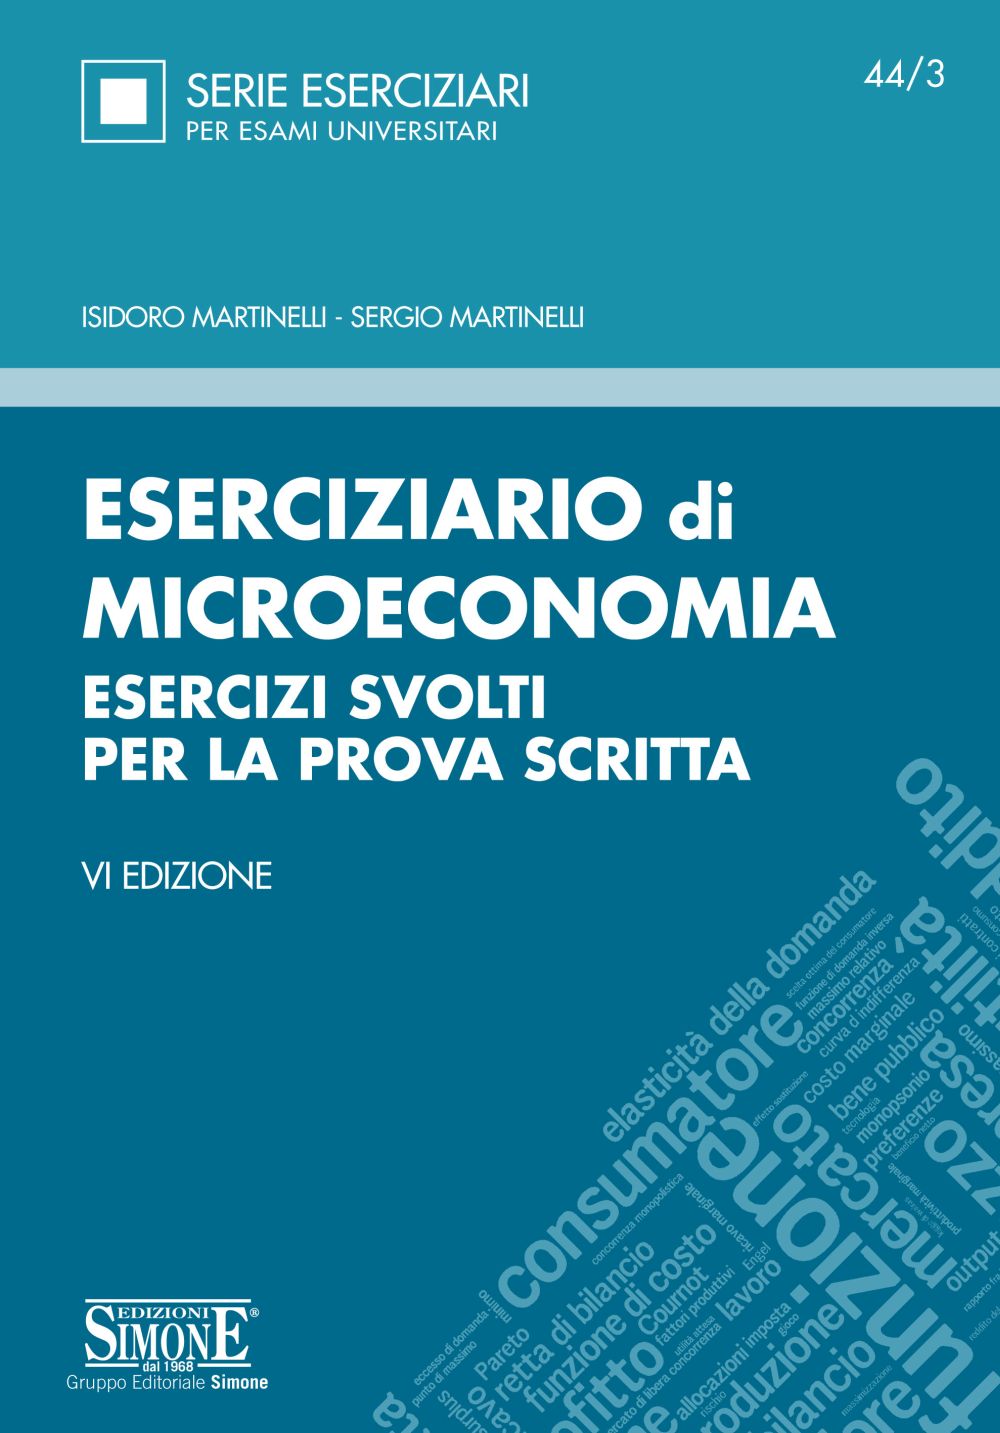 [Ebook] Eserciziario di Microeconomia